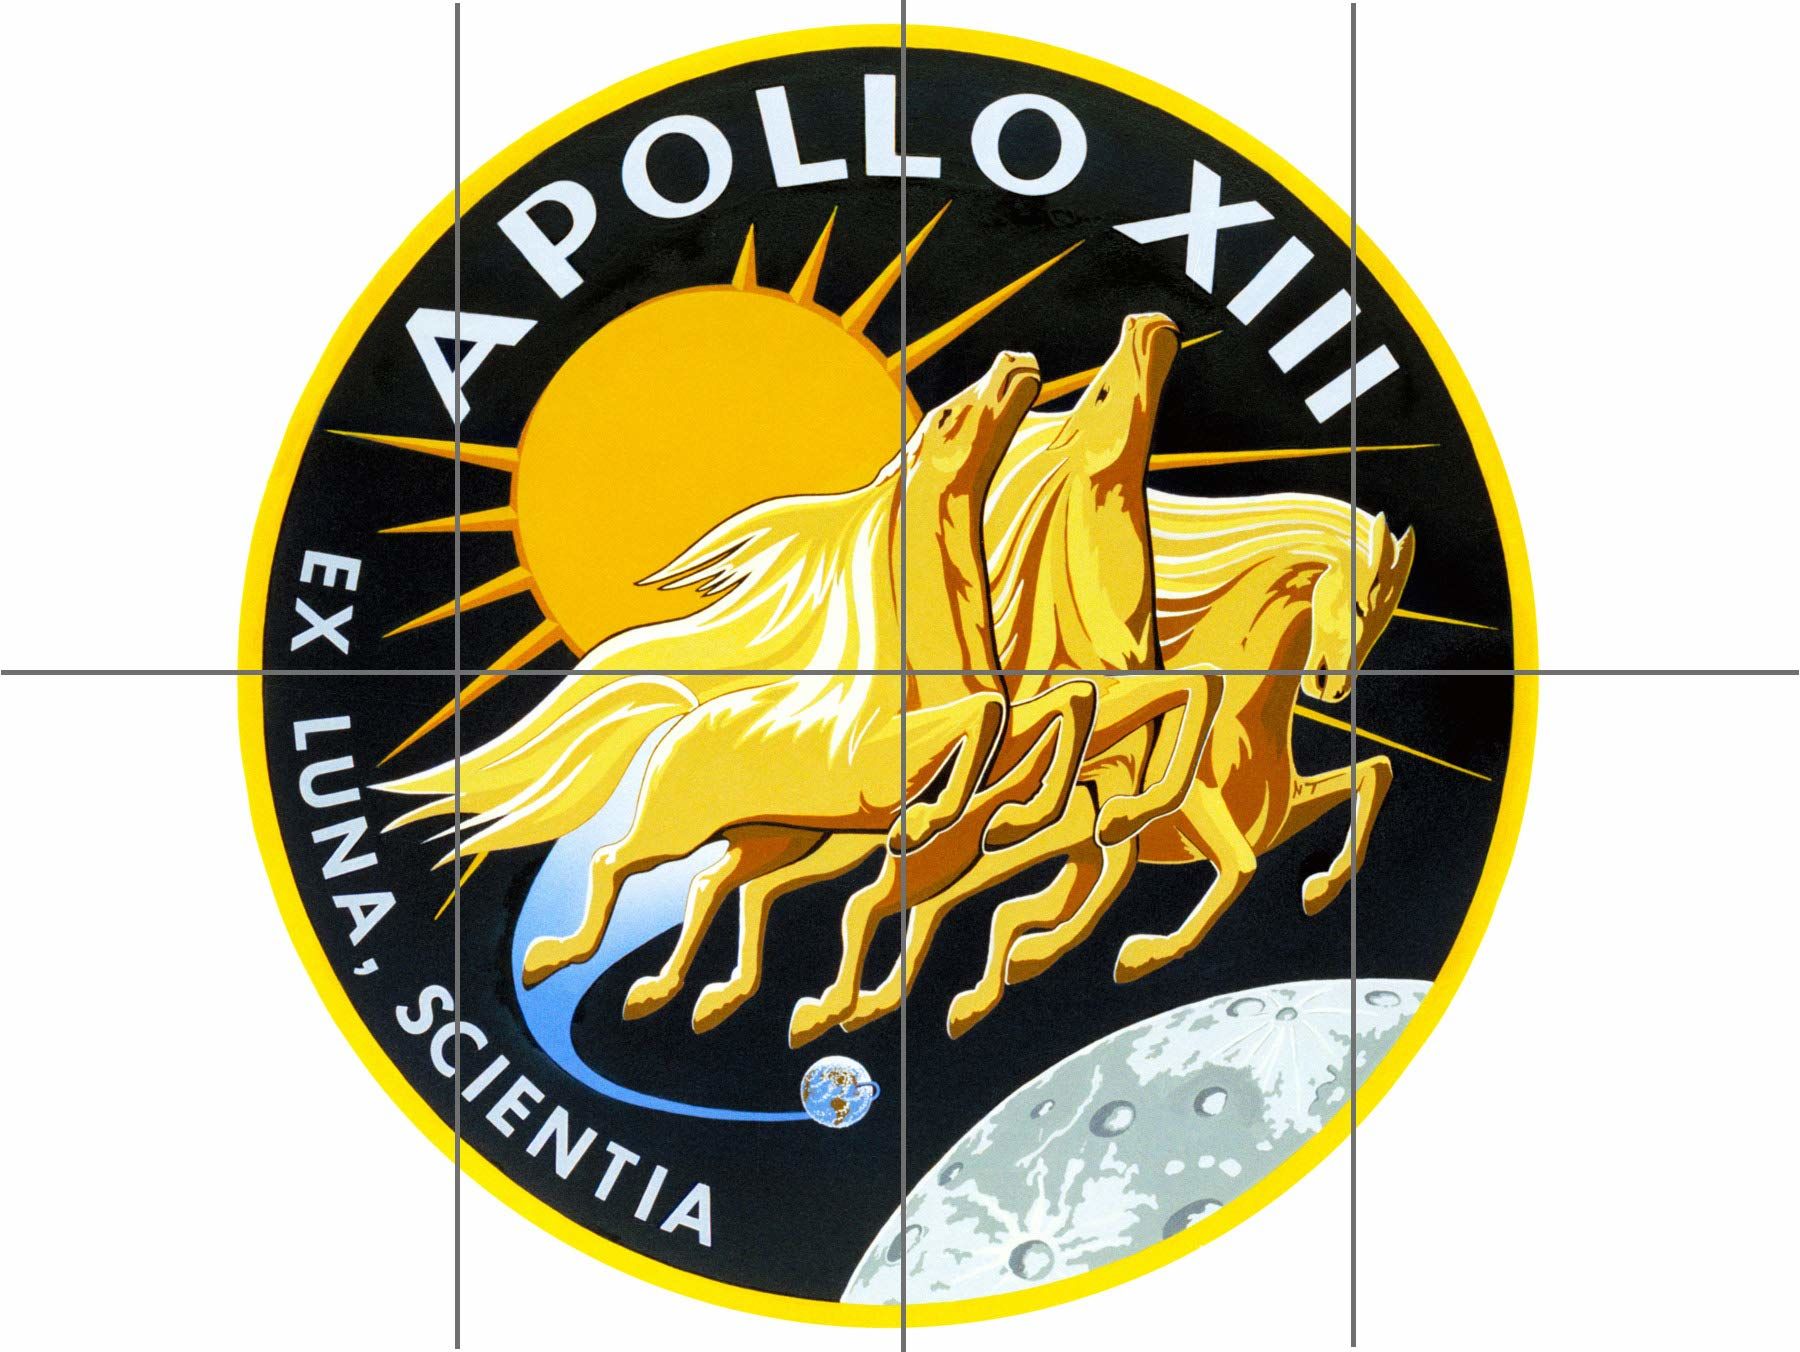 Space NASA Apollo 13 emblemat misji naszywka XL gigantyczny plakat panelowy (8 sekcji)